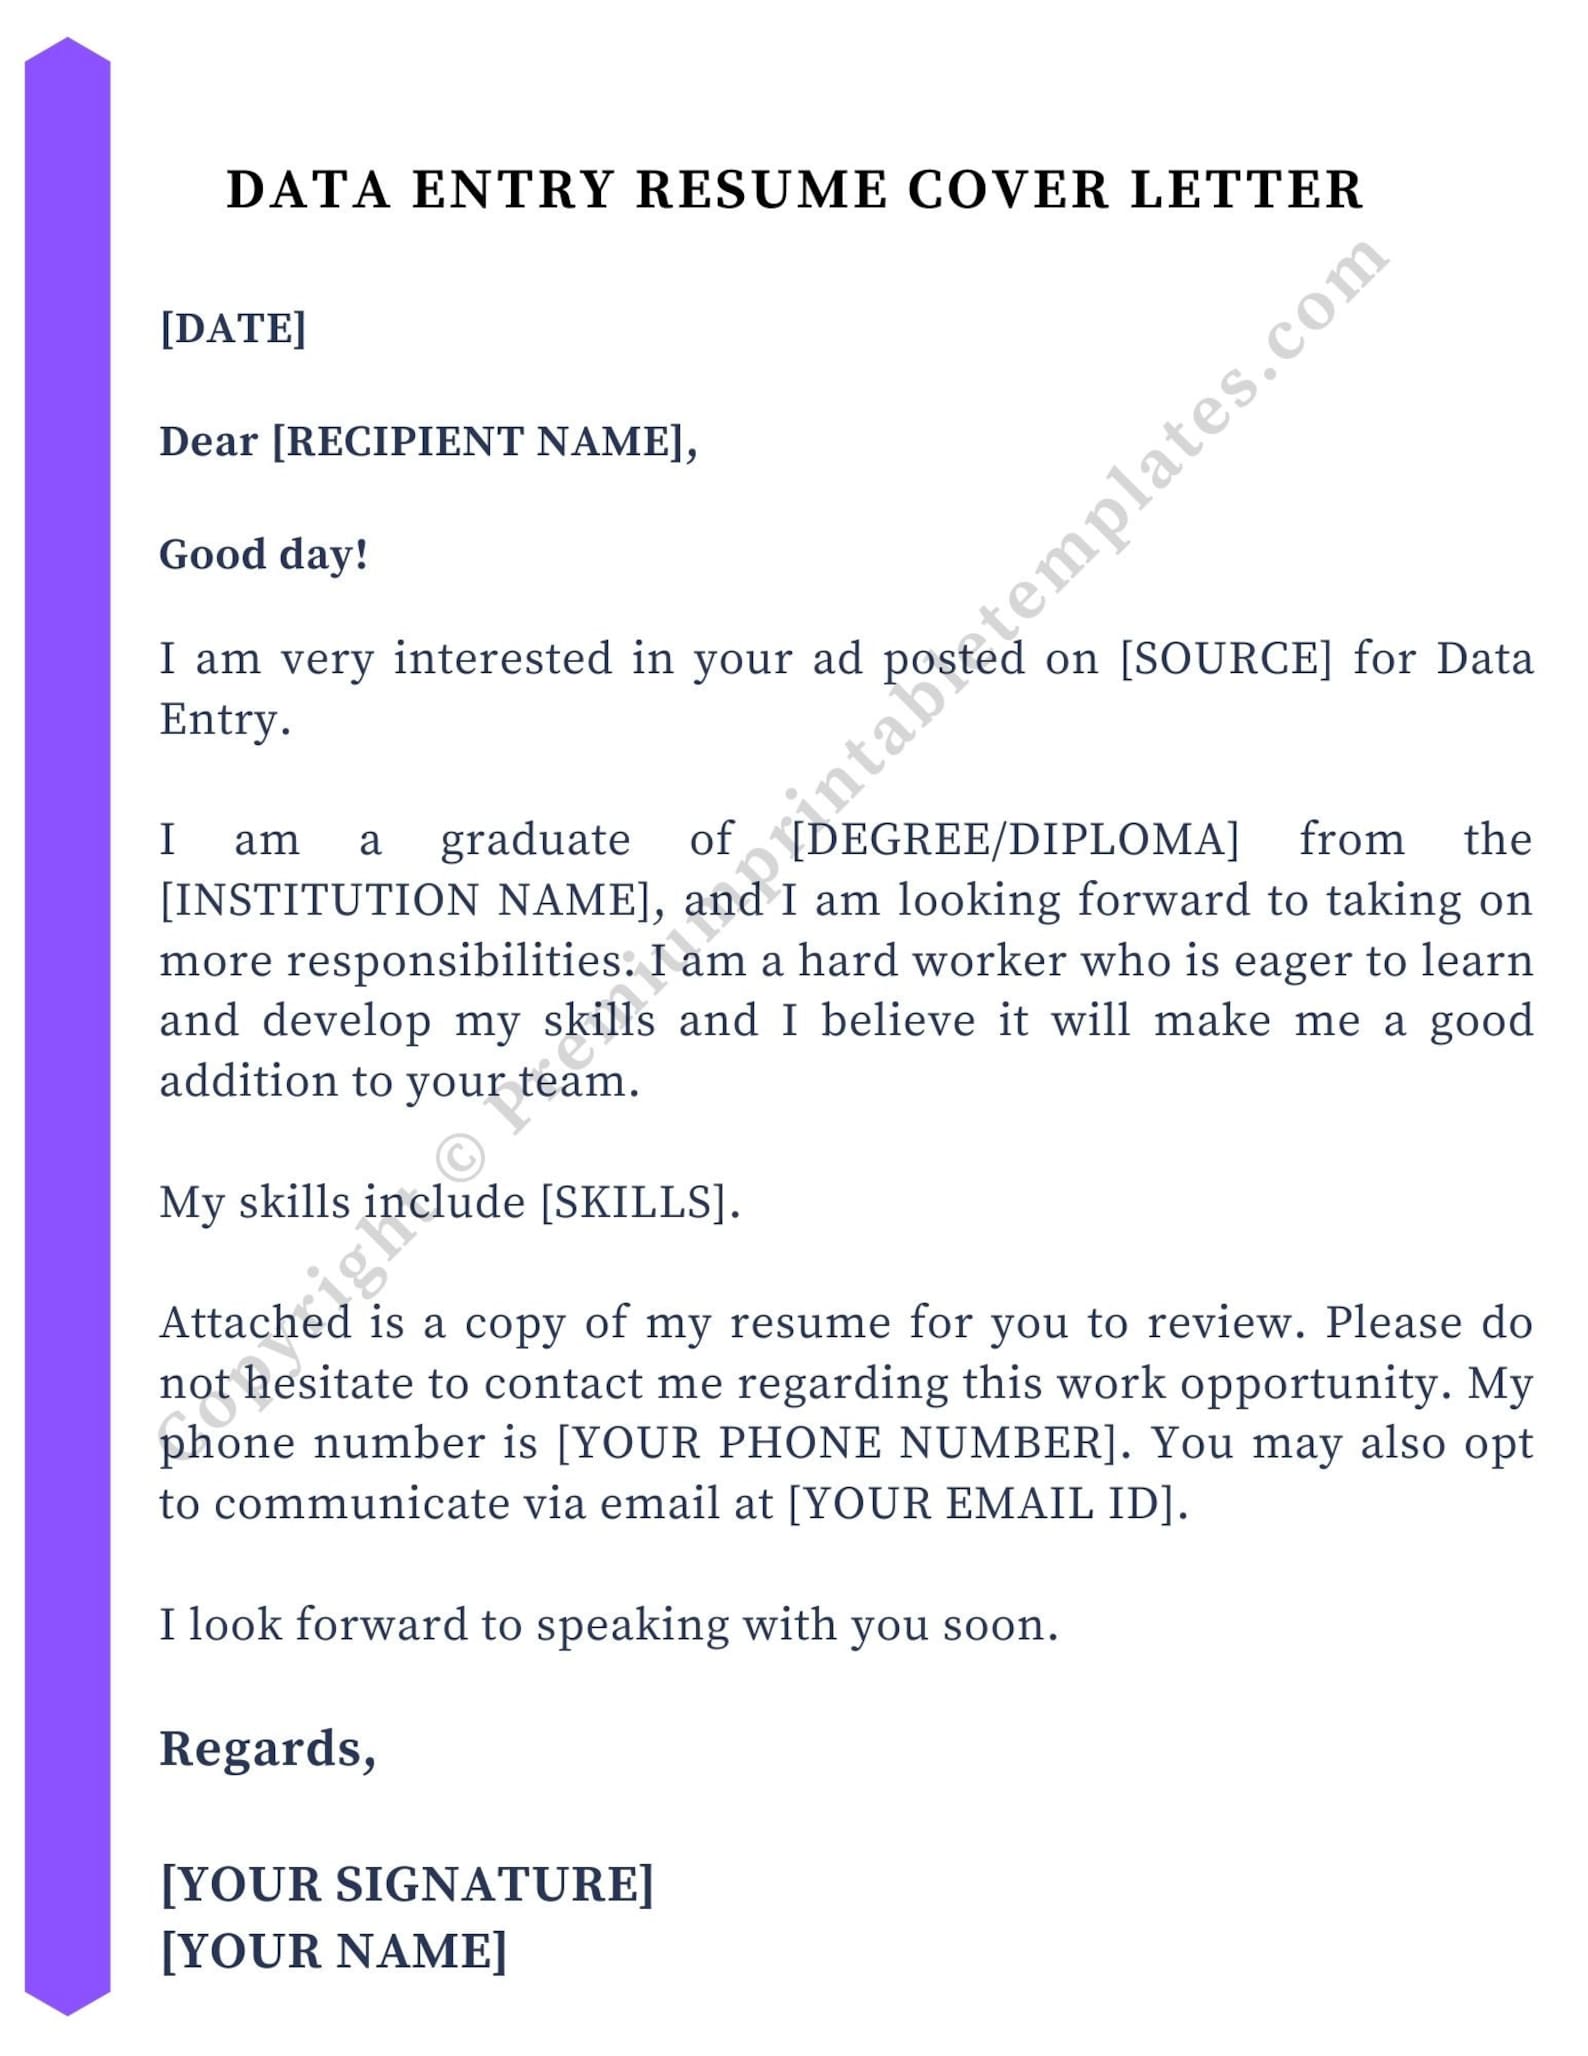 cover letter application for data entry